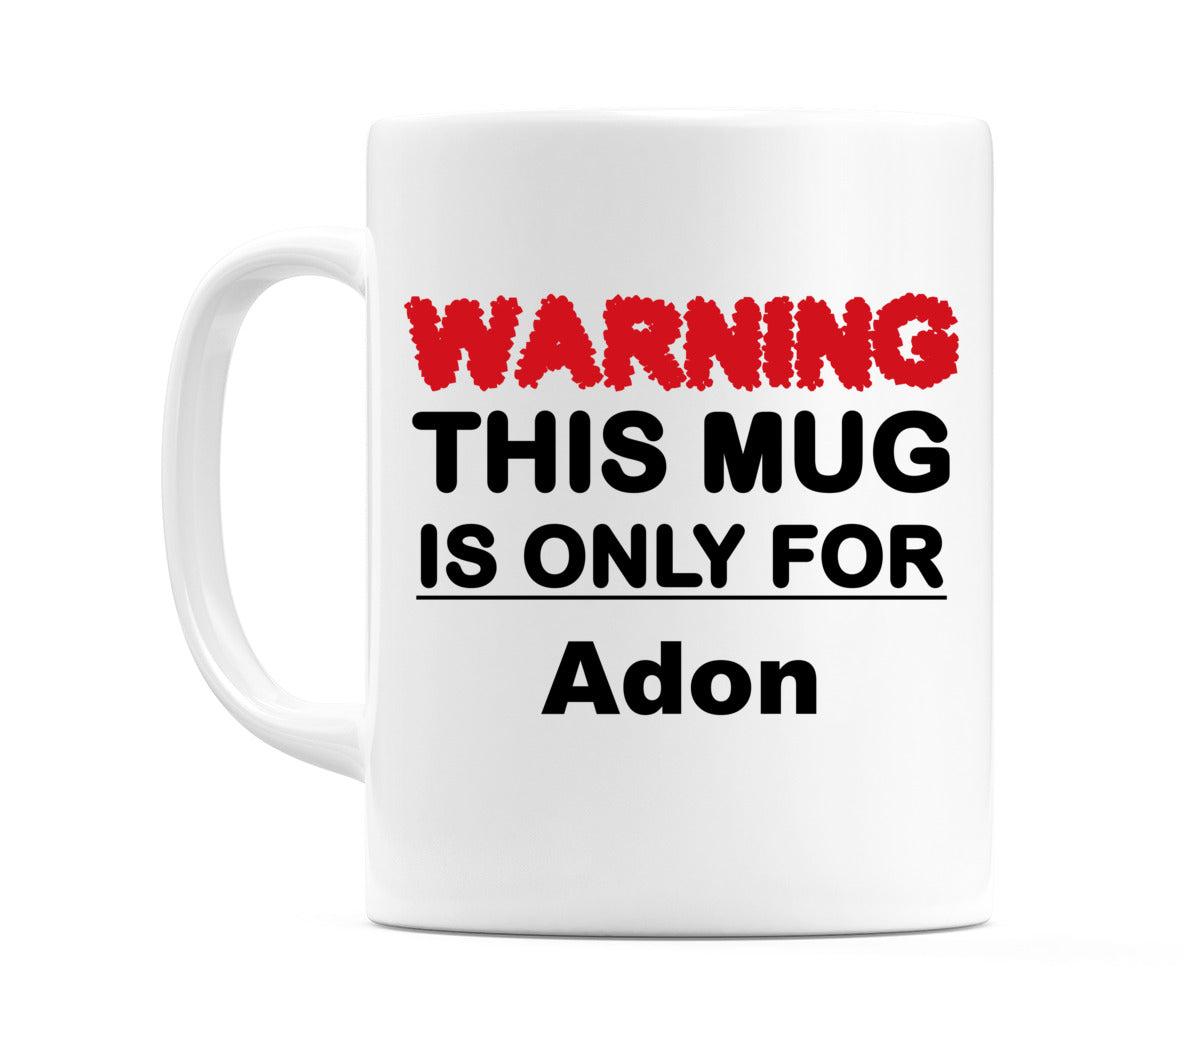 Warning This Mug is ONLY for Adon Mug